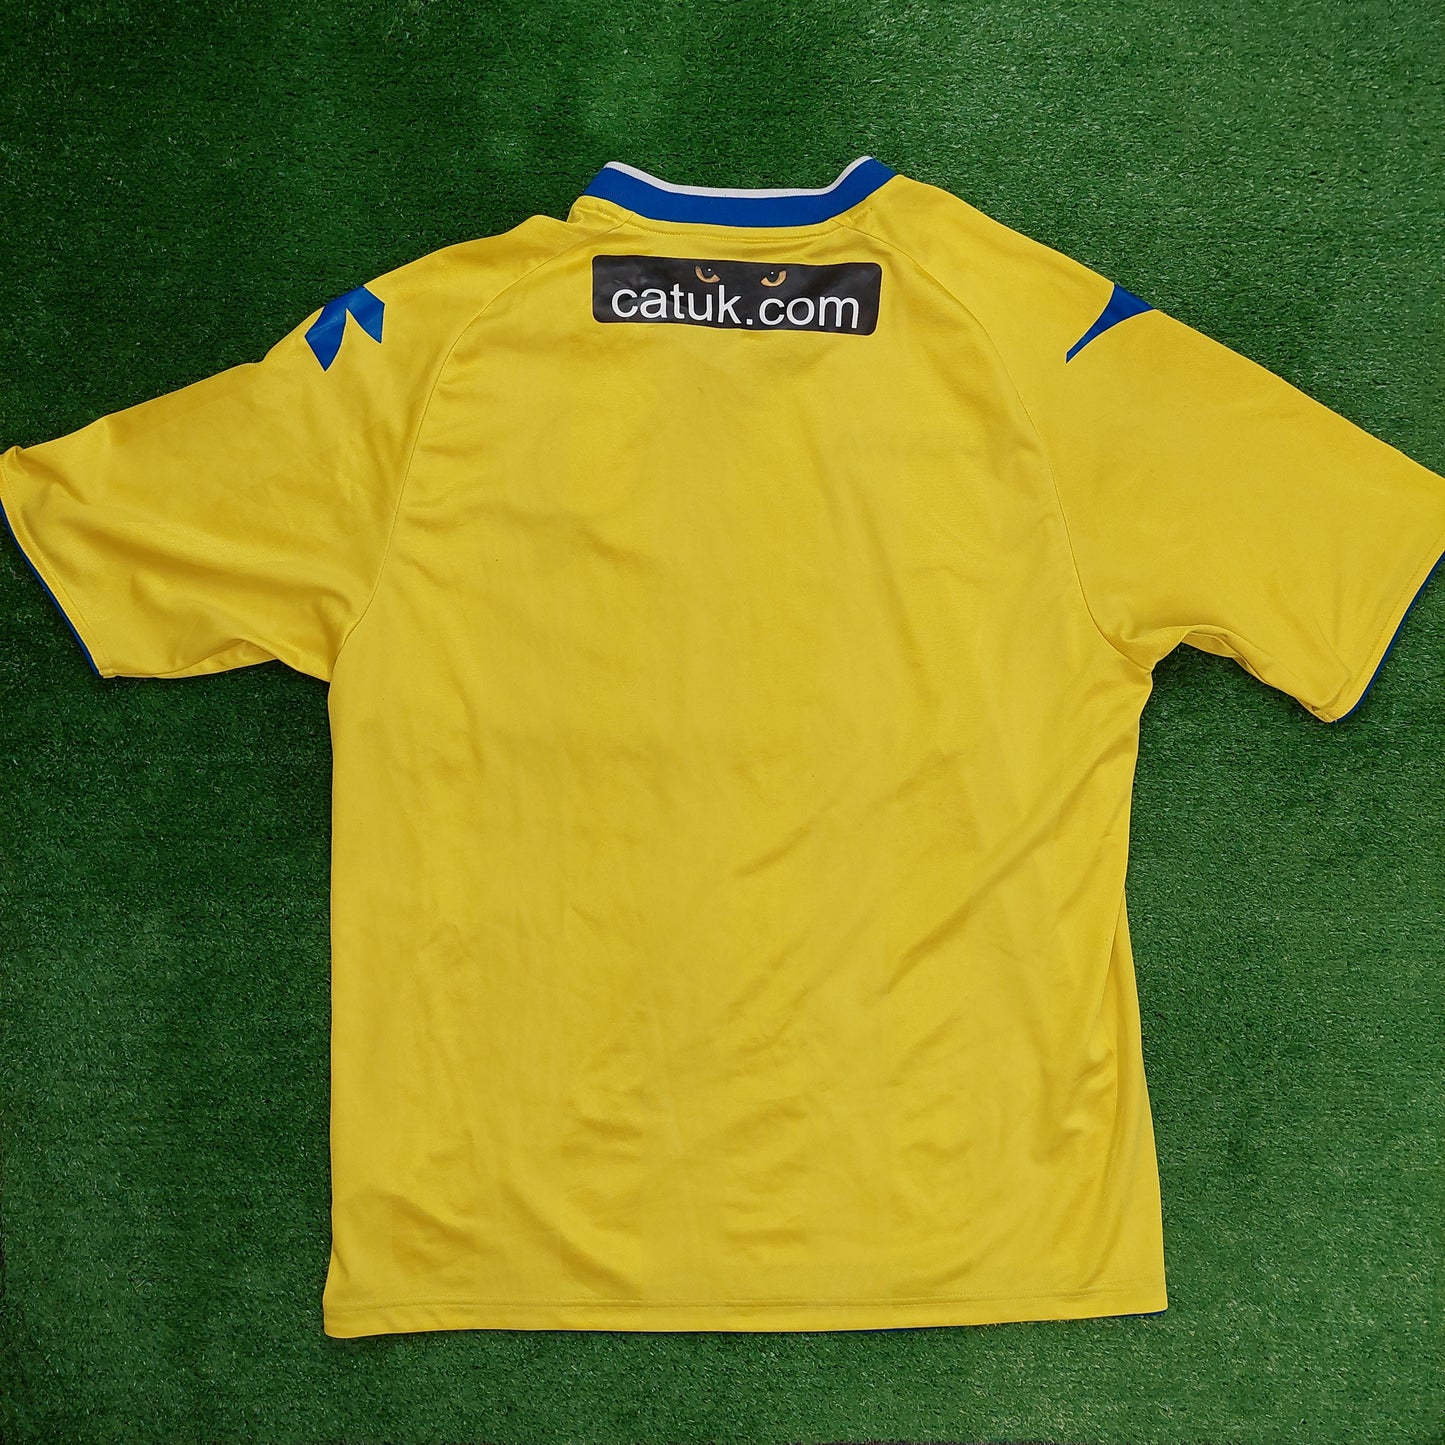 Walsall 2012/13 Third Shirt (Very Good) - Size XL